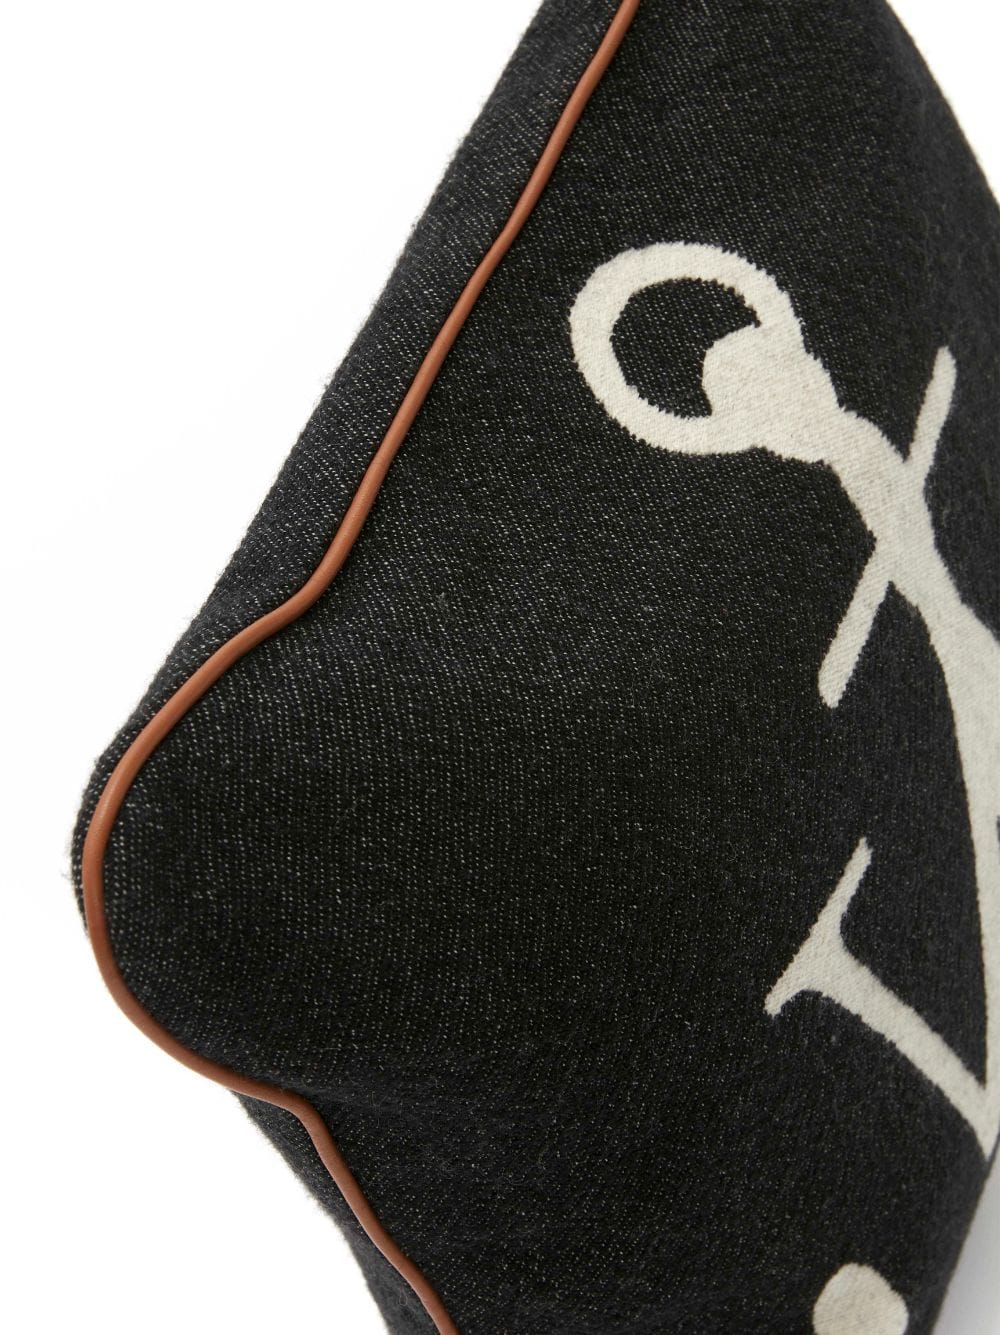 Anchor-logo squared cushion